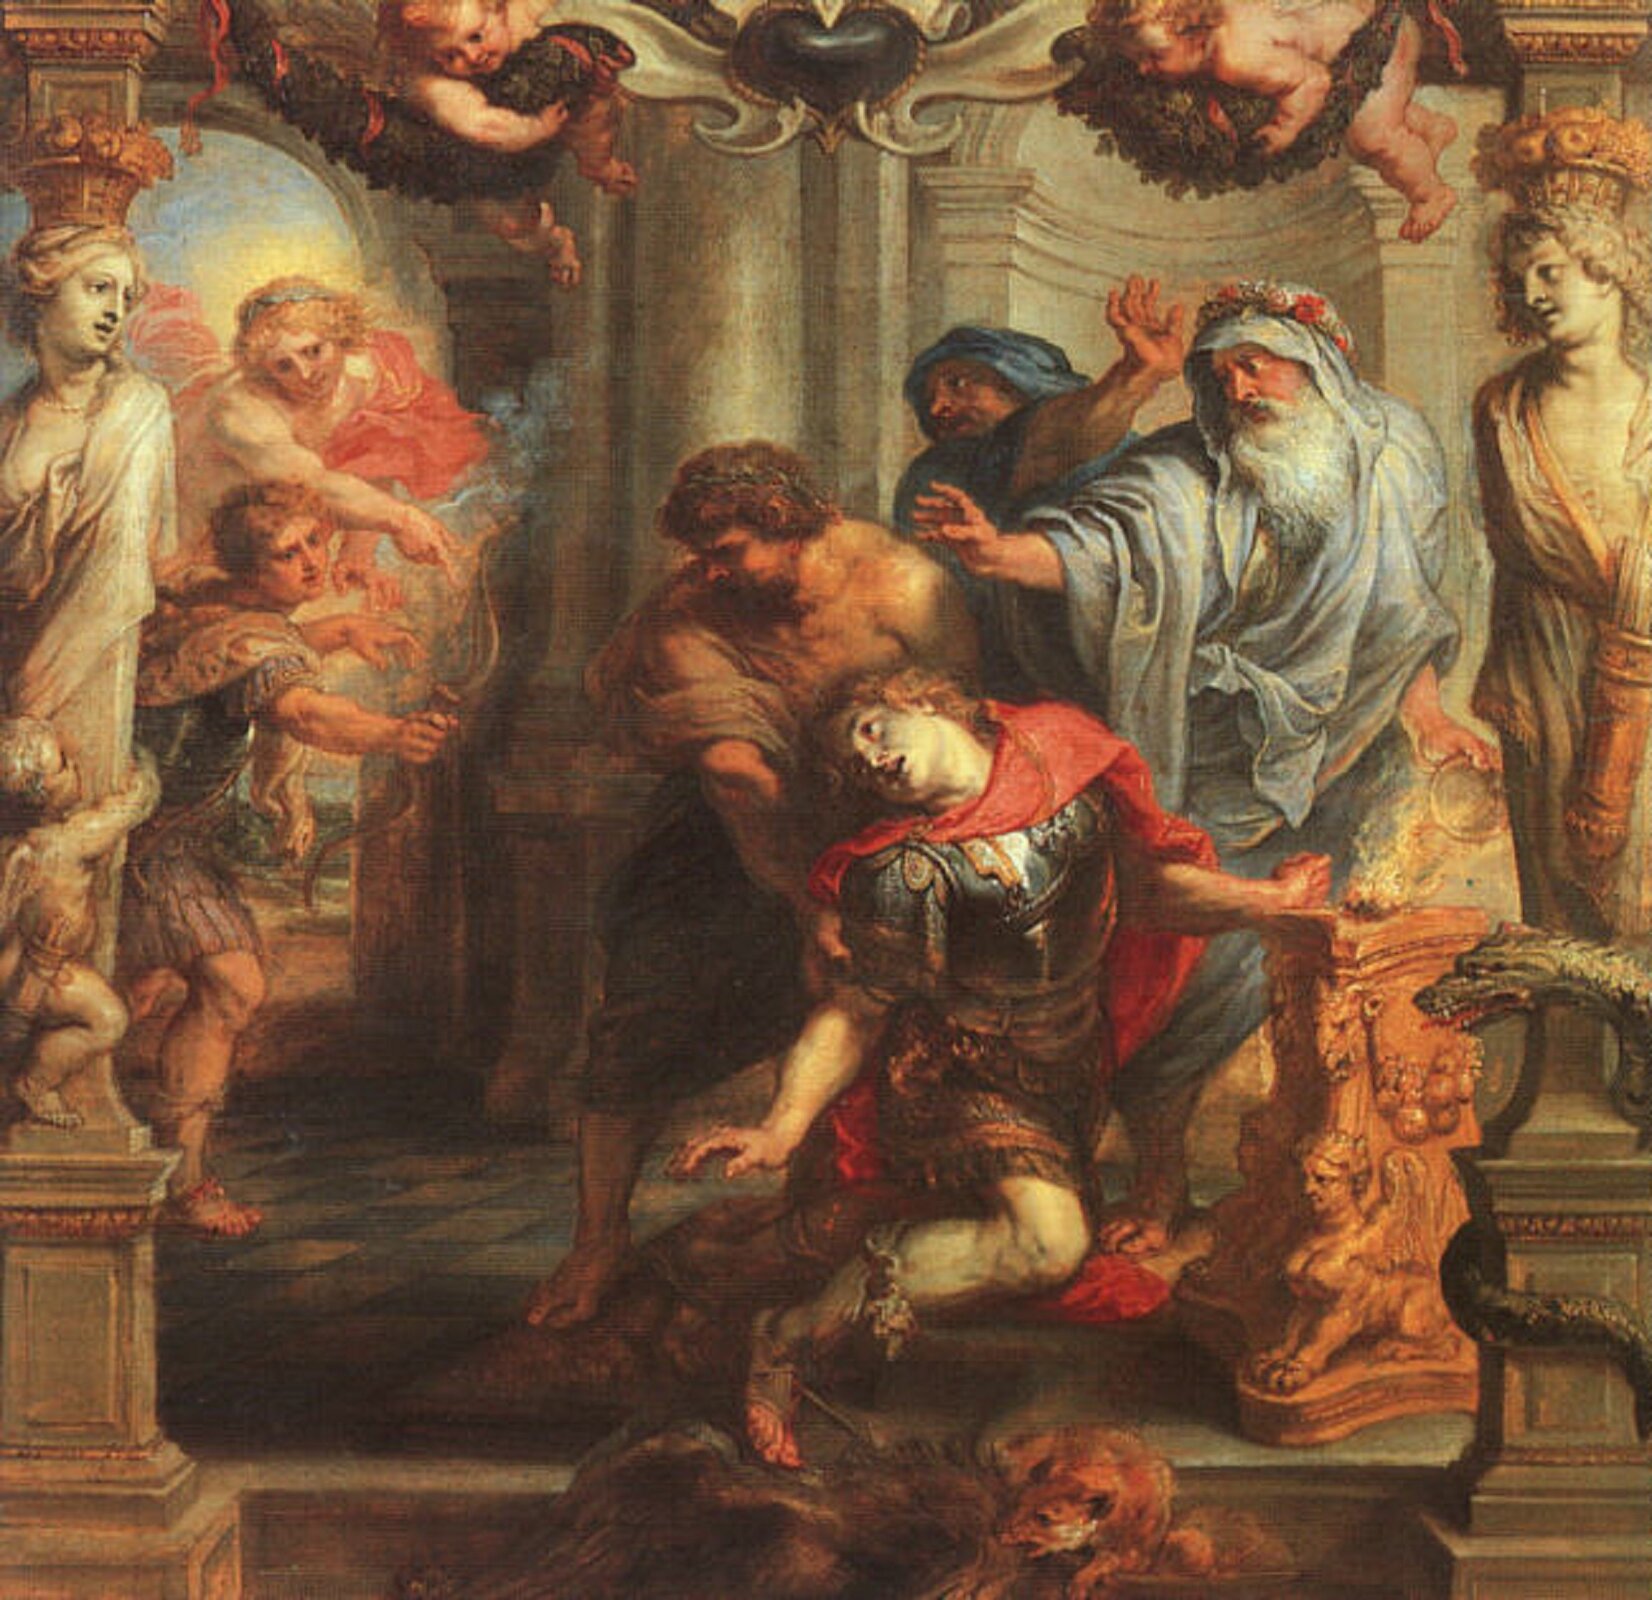 Ilustracja przedstawia dzieło P. P. Rubensa pt. "Śmierć Achillesa". Na ilustracji widać Achillesa z przebitą strzałą piętą. Upada, podtrzymywany jest przez innego wojownika. Ubrany jest w zbroję. Za nim stoi jeszcze dwóch mężczyzn, z wyciągniętymi rękoma do przodu. Z tyłu obrazu stoi Parys z wycelowanym łukiem. Obok niego widać kobietę, która wskazuje mu palcem piętę Achillesa. Scena rozgrywa się w pomieszczeniu, Achilles znajduje się między dwiema kolumnami, kariatydami, spoglądającymi na niego.